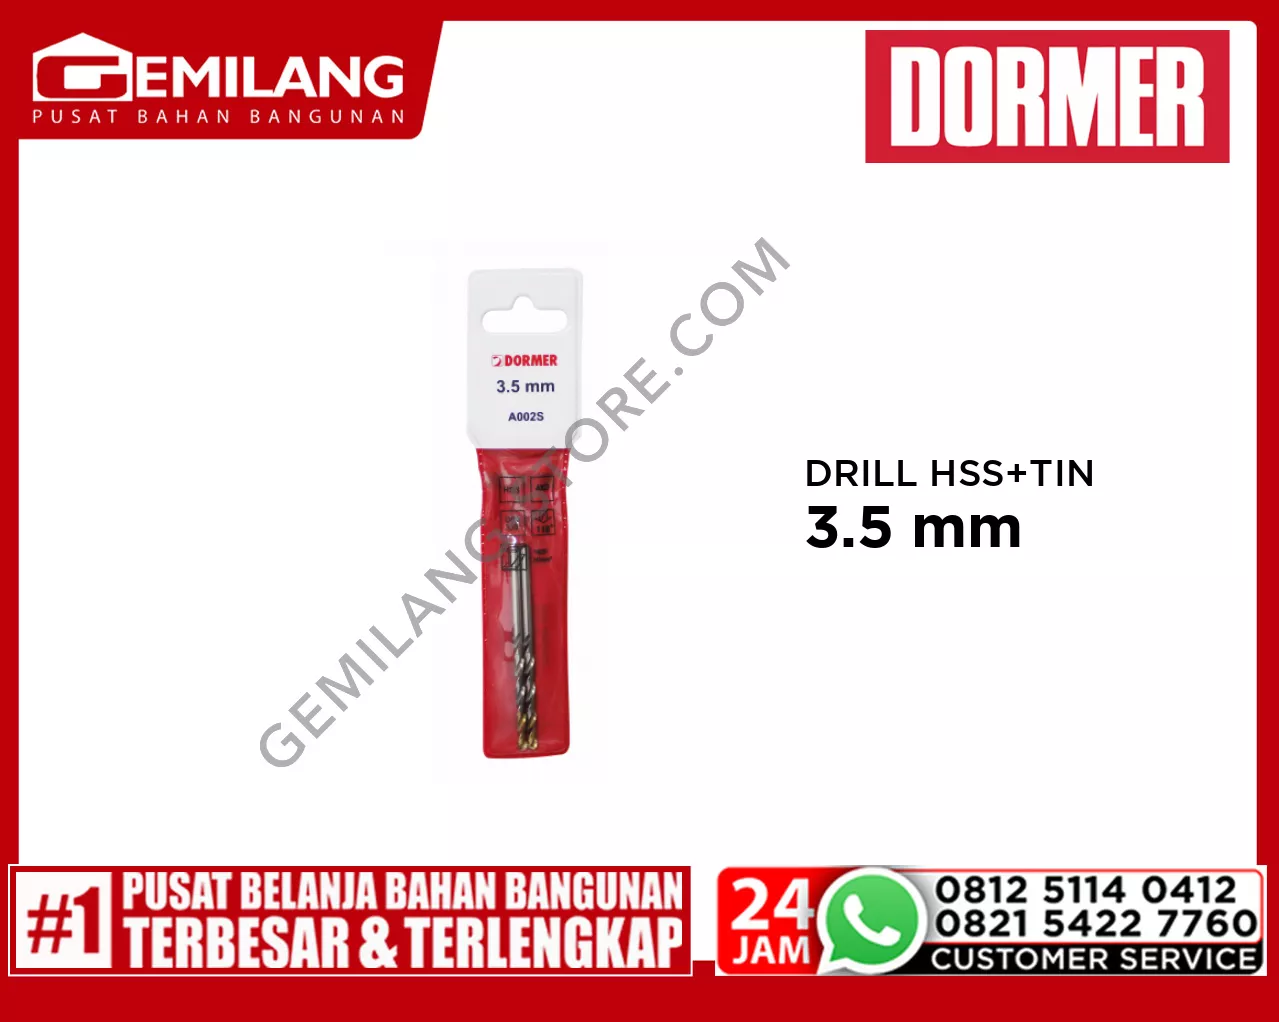 DORMER DRILL (POUCH) HSS + TIN A002S 3.5mm